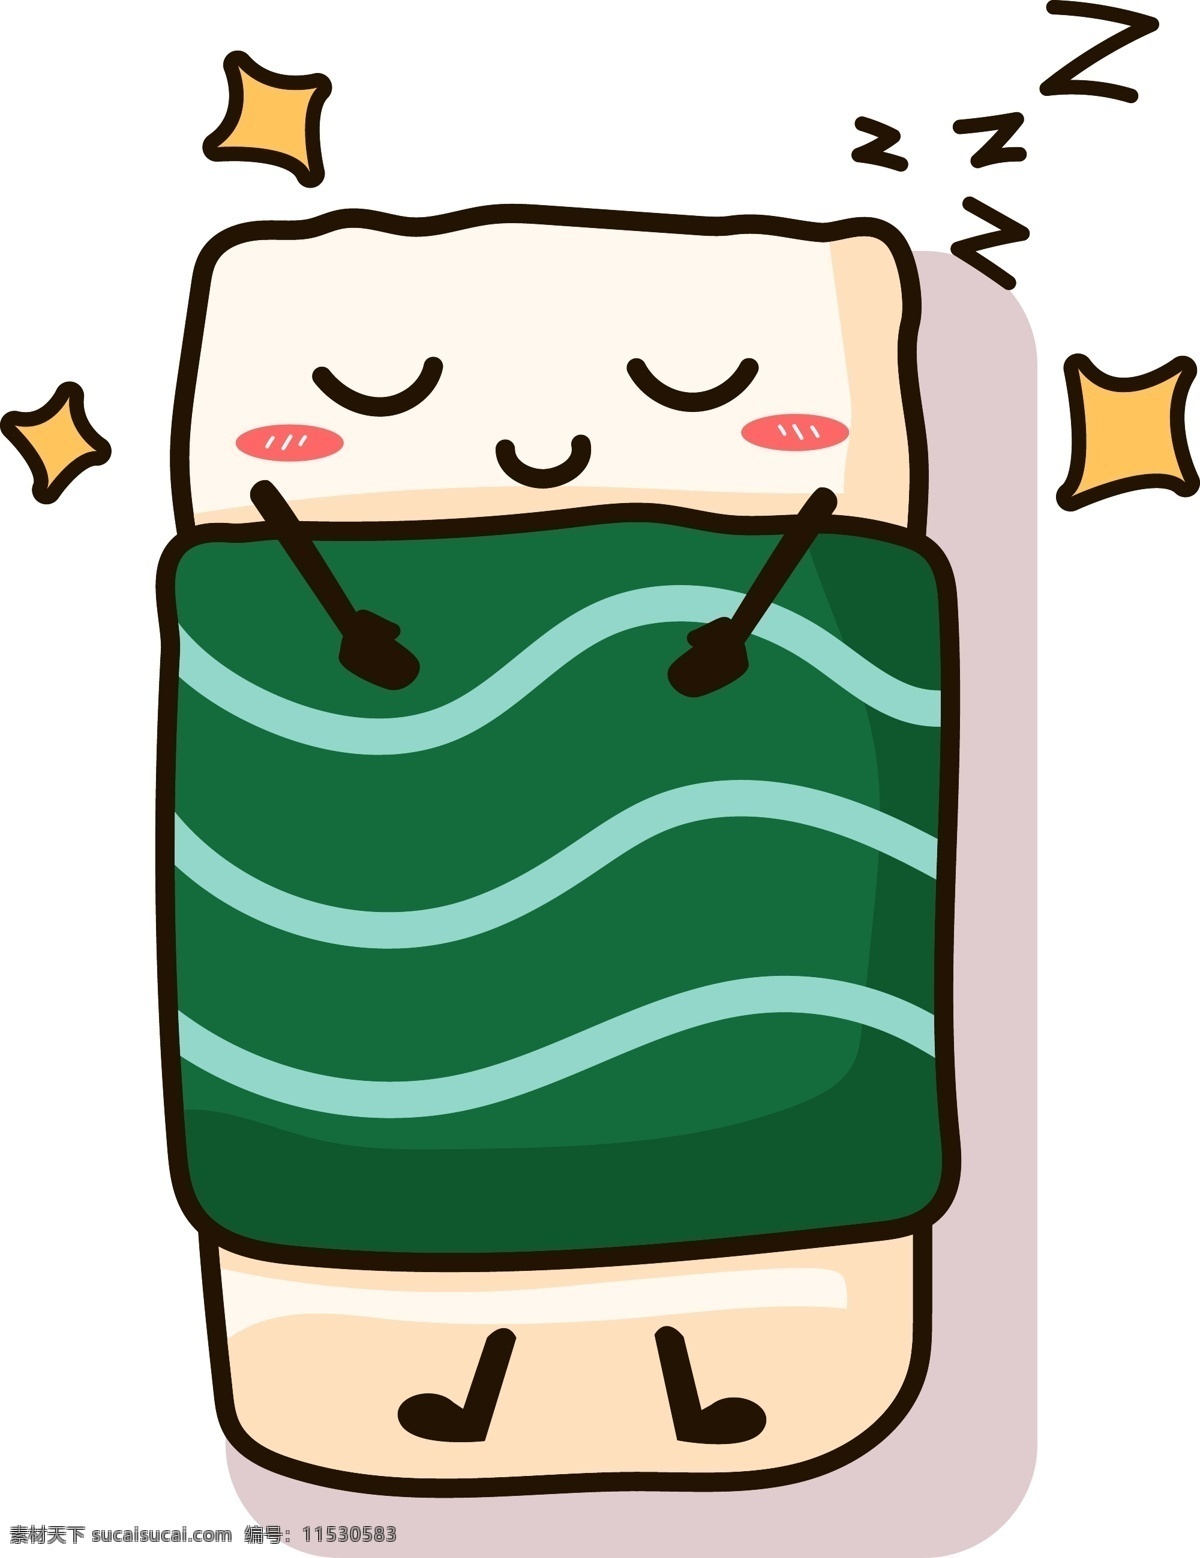 寿司 食物 表情 卡通 矢量 商用 装饰 元素 睡觉 可商用